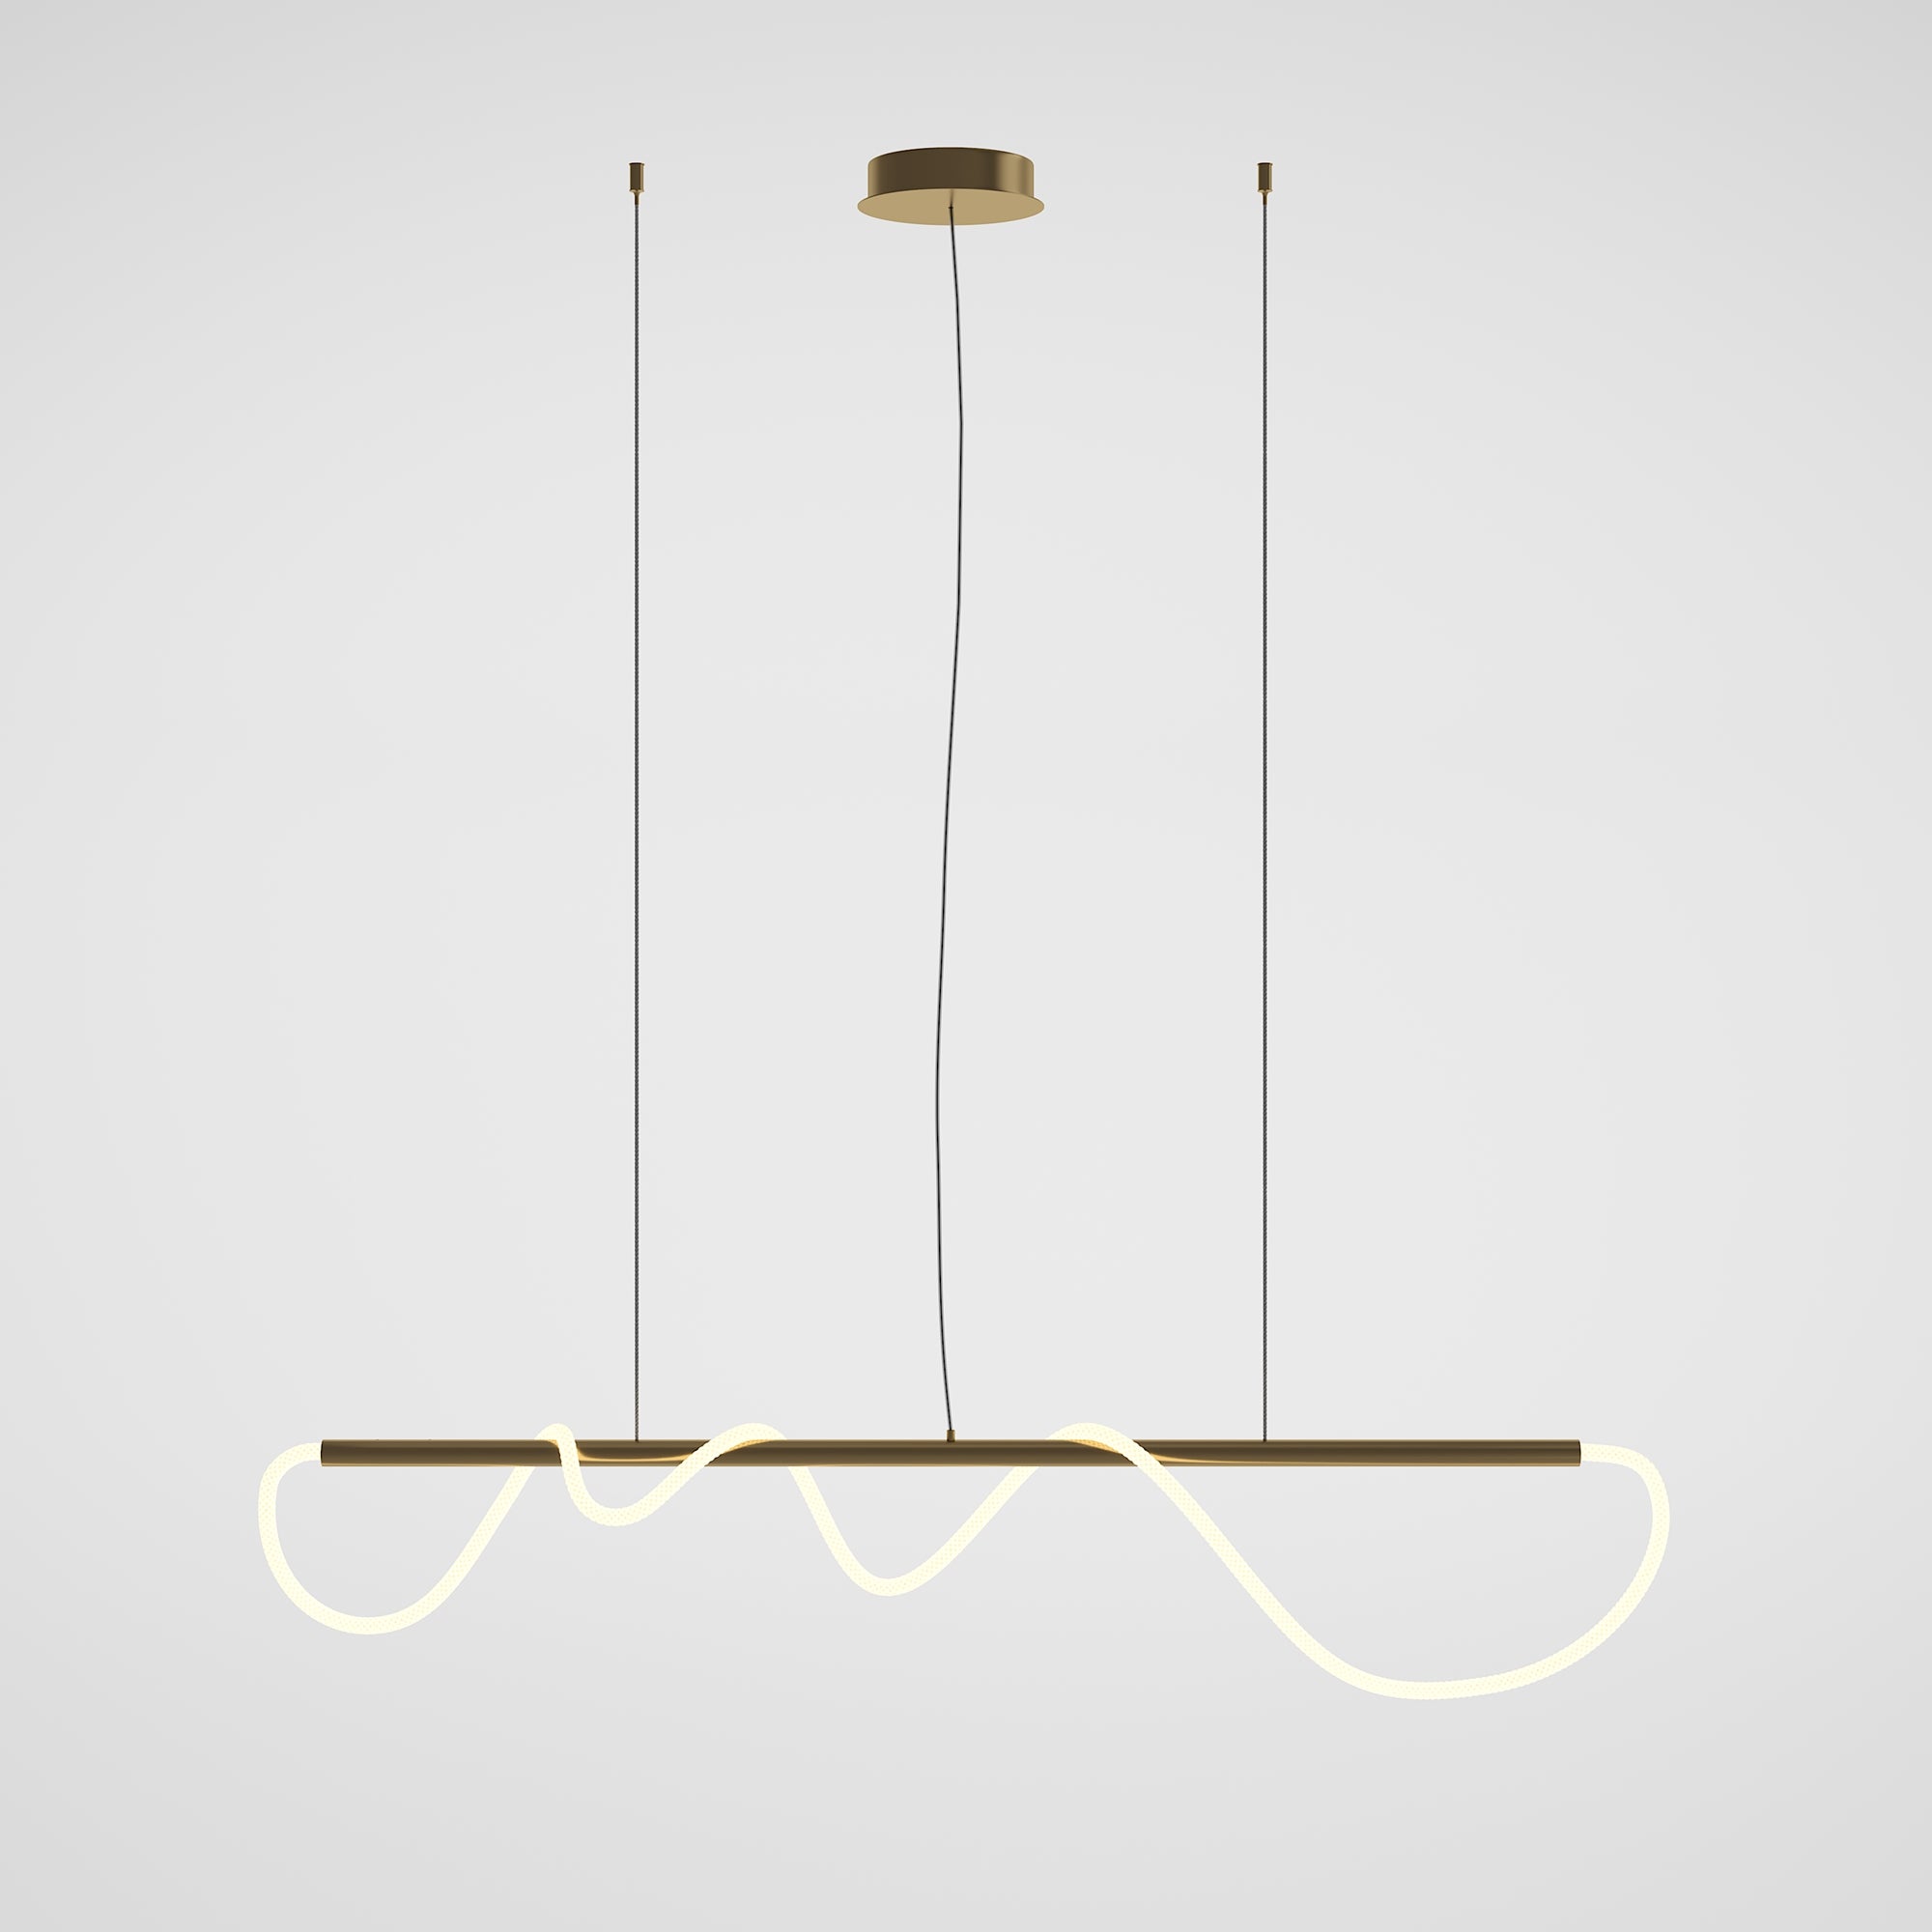 Tau Kitchen Linear LED Light - Gold Finish